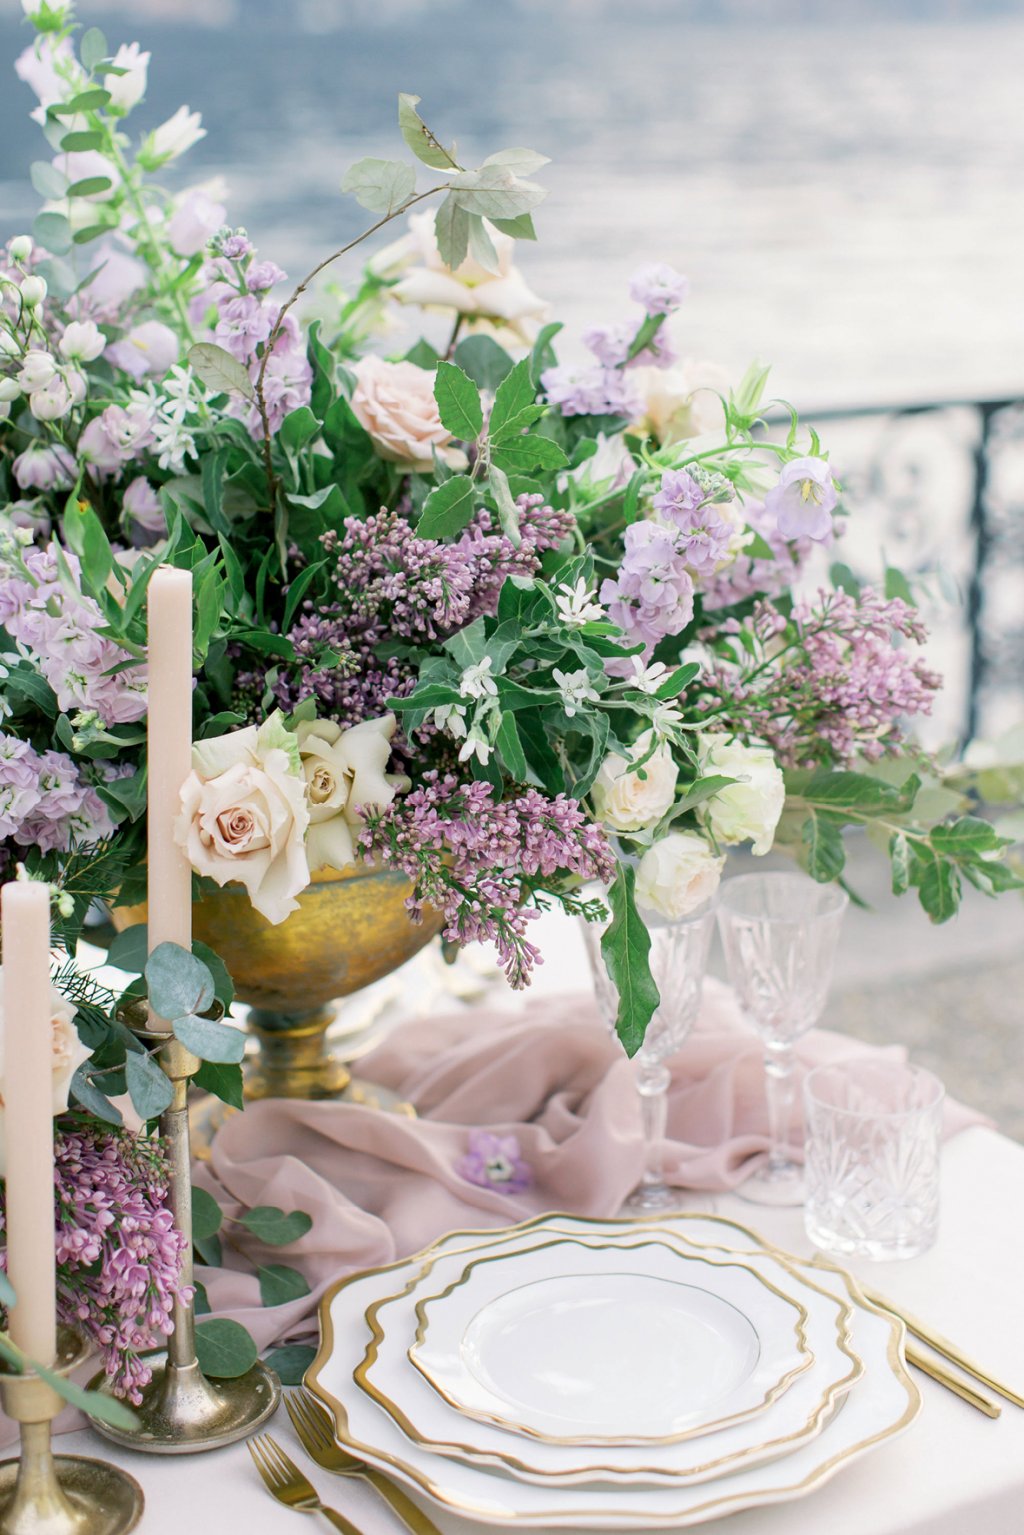 Detalhe da mesa de festa com panos lilás, velas e flores brancas e lilás